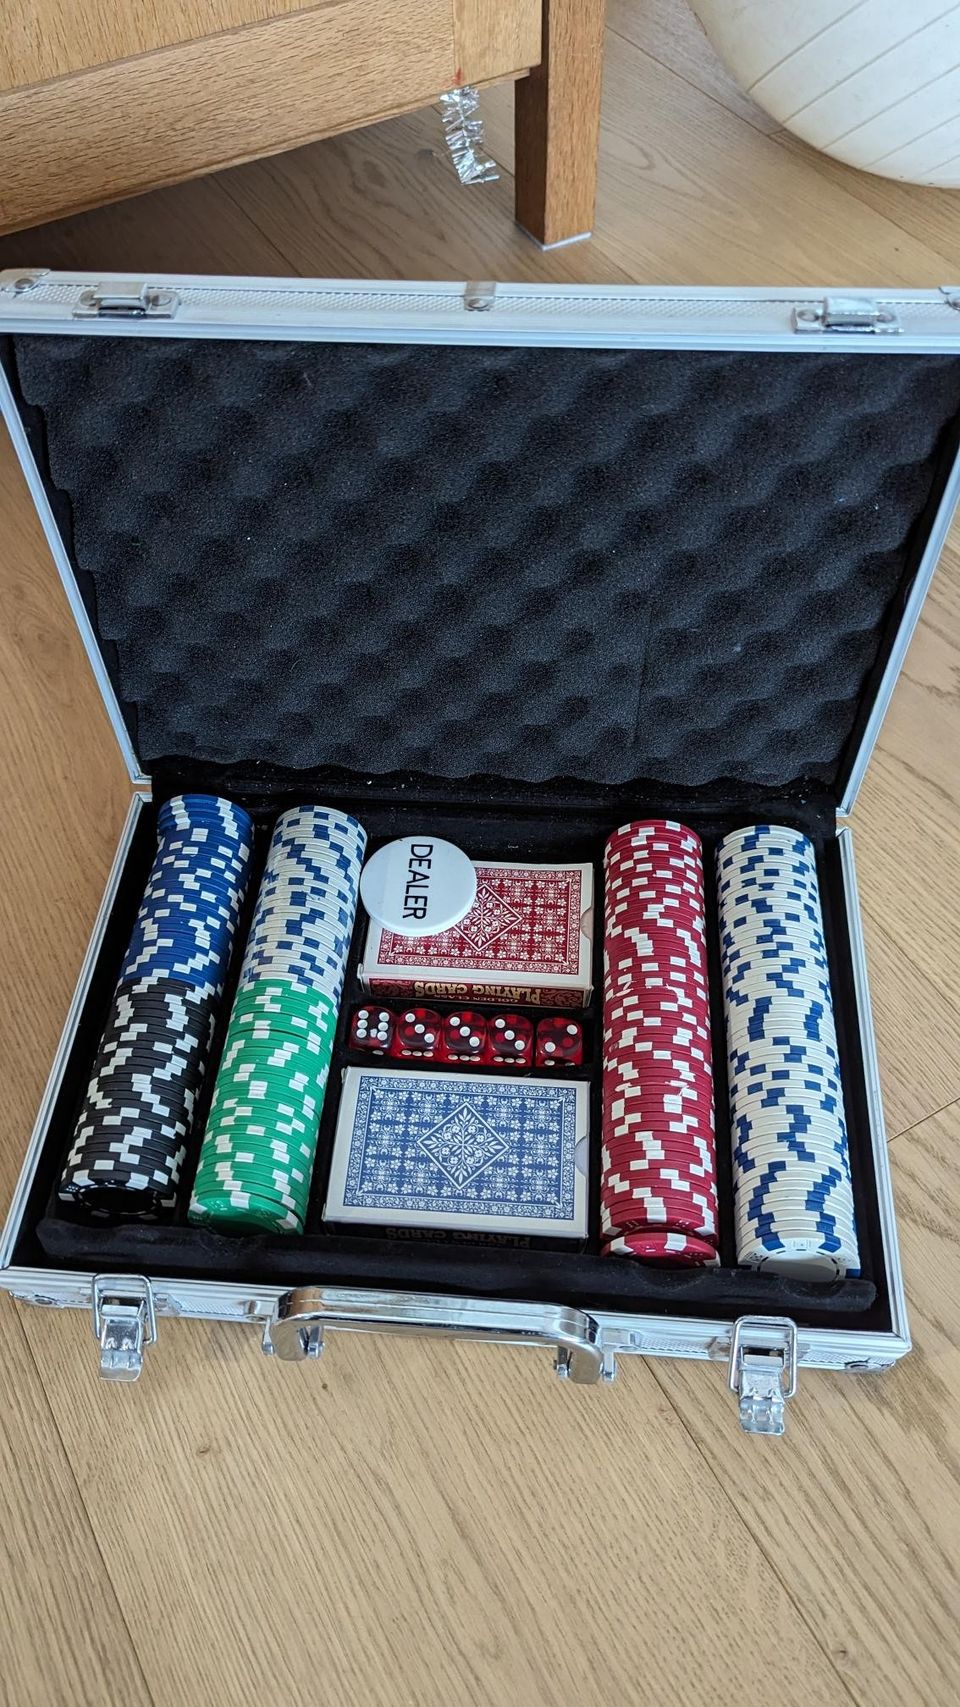 Pokerisetti